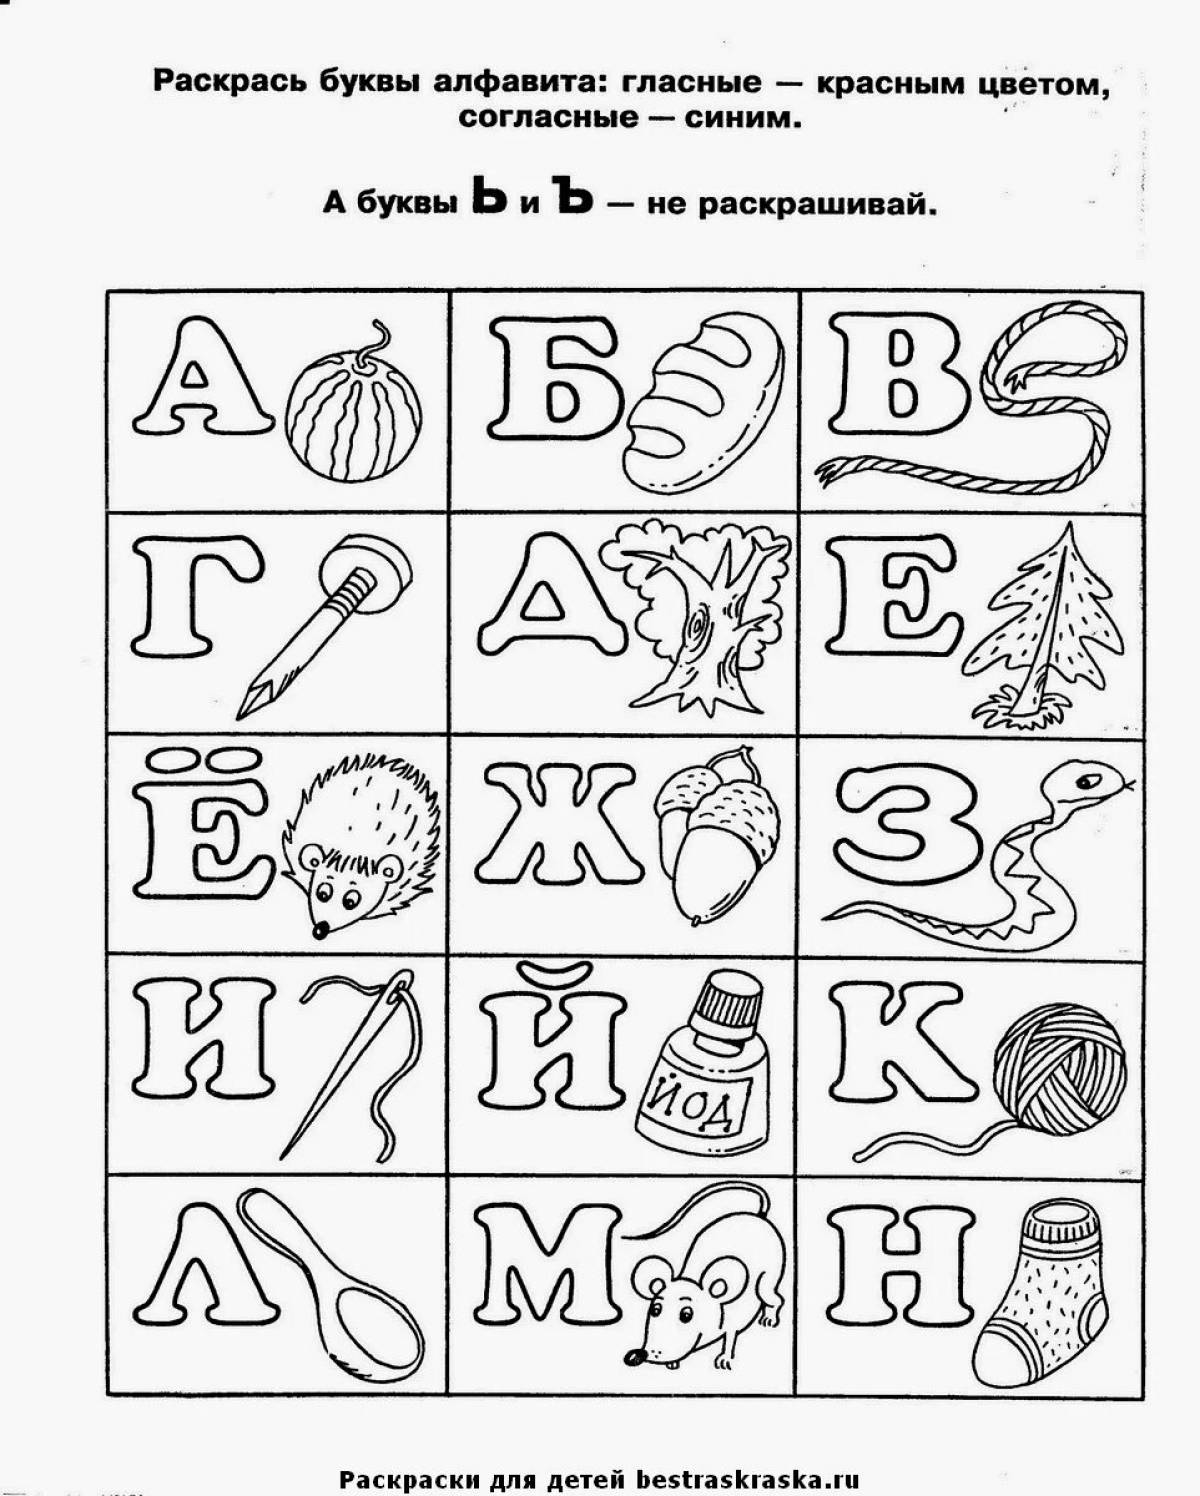 Алфавит русский печатный все 33 буквы #14